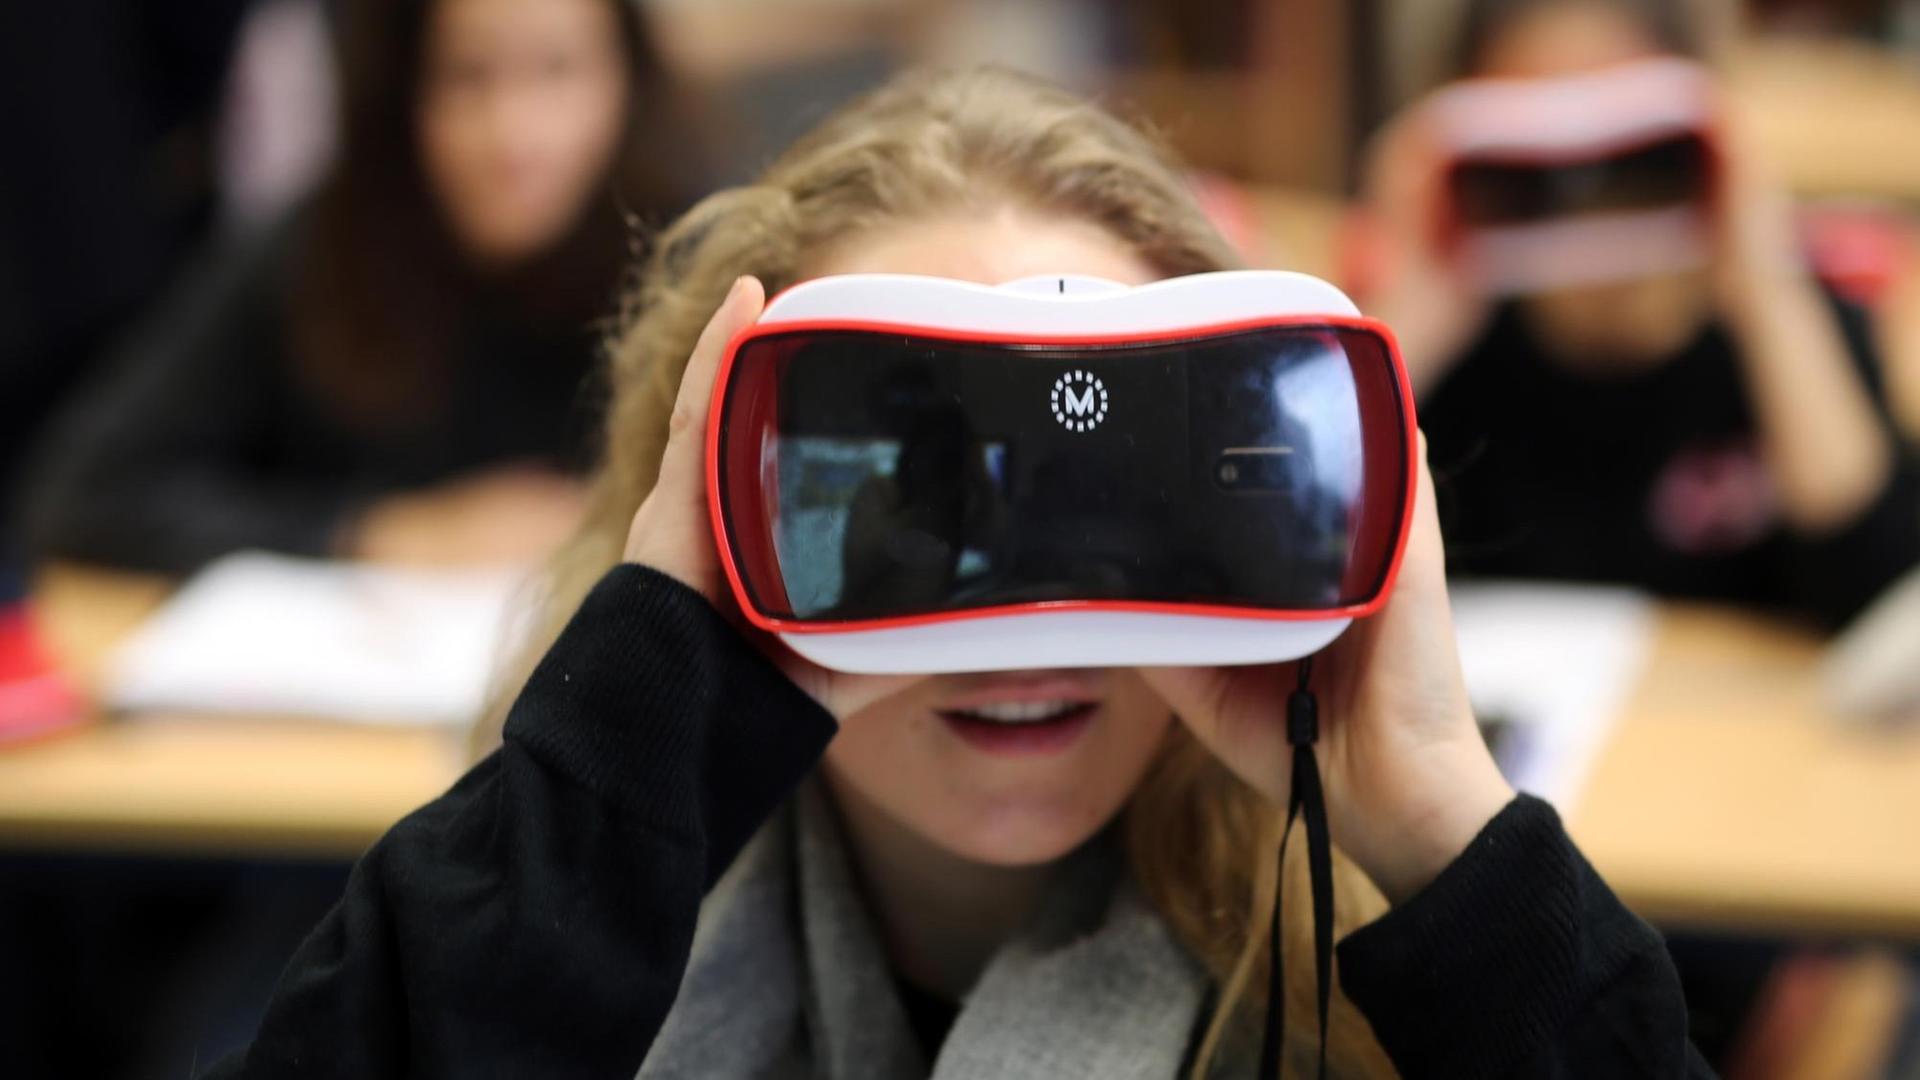 Schüler der International School on the Rhine (ISR) arbeiten am 15.12.2017 in Neuss (Nordrhein-Westfalen) im digitalen Unterricht mit Virtual Reality Brillen.